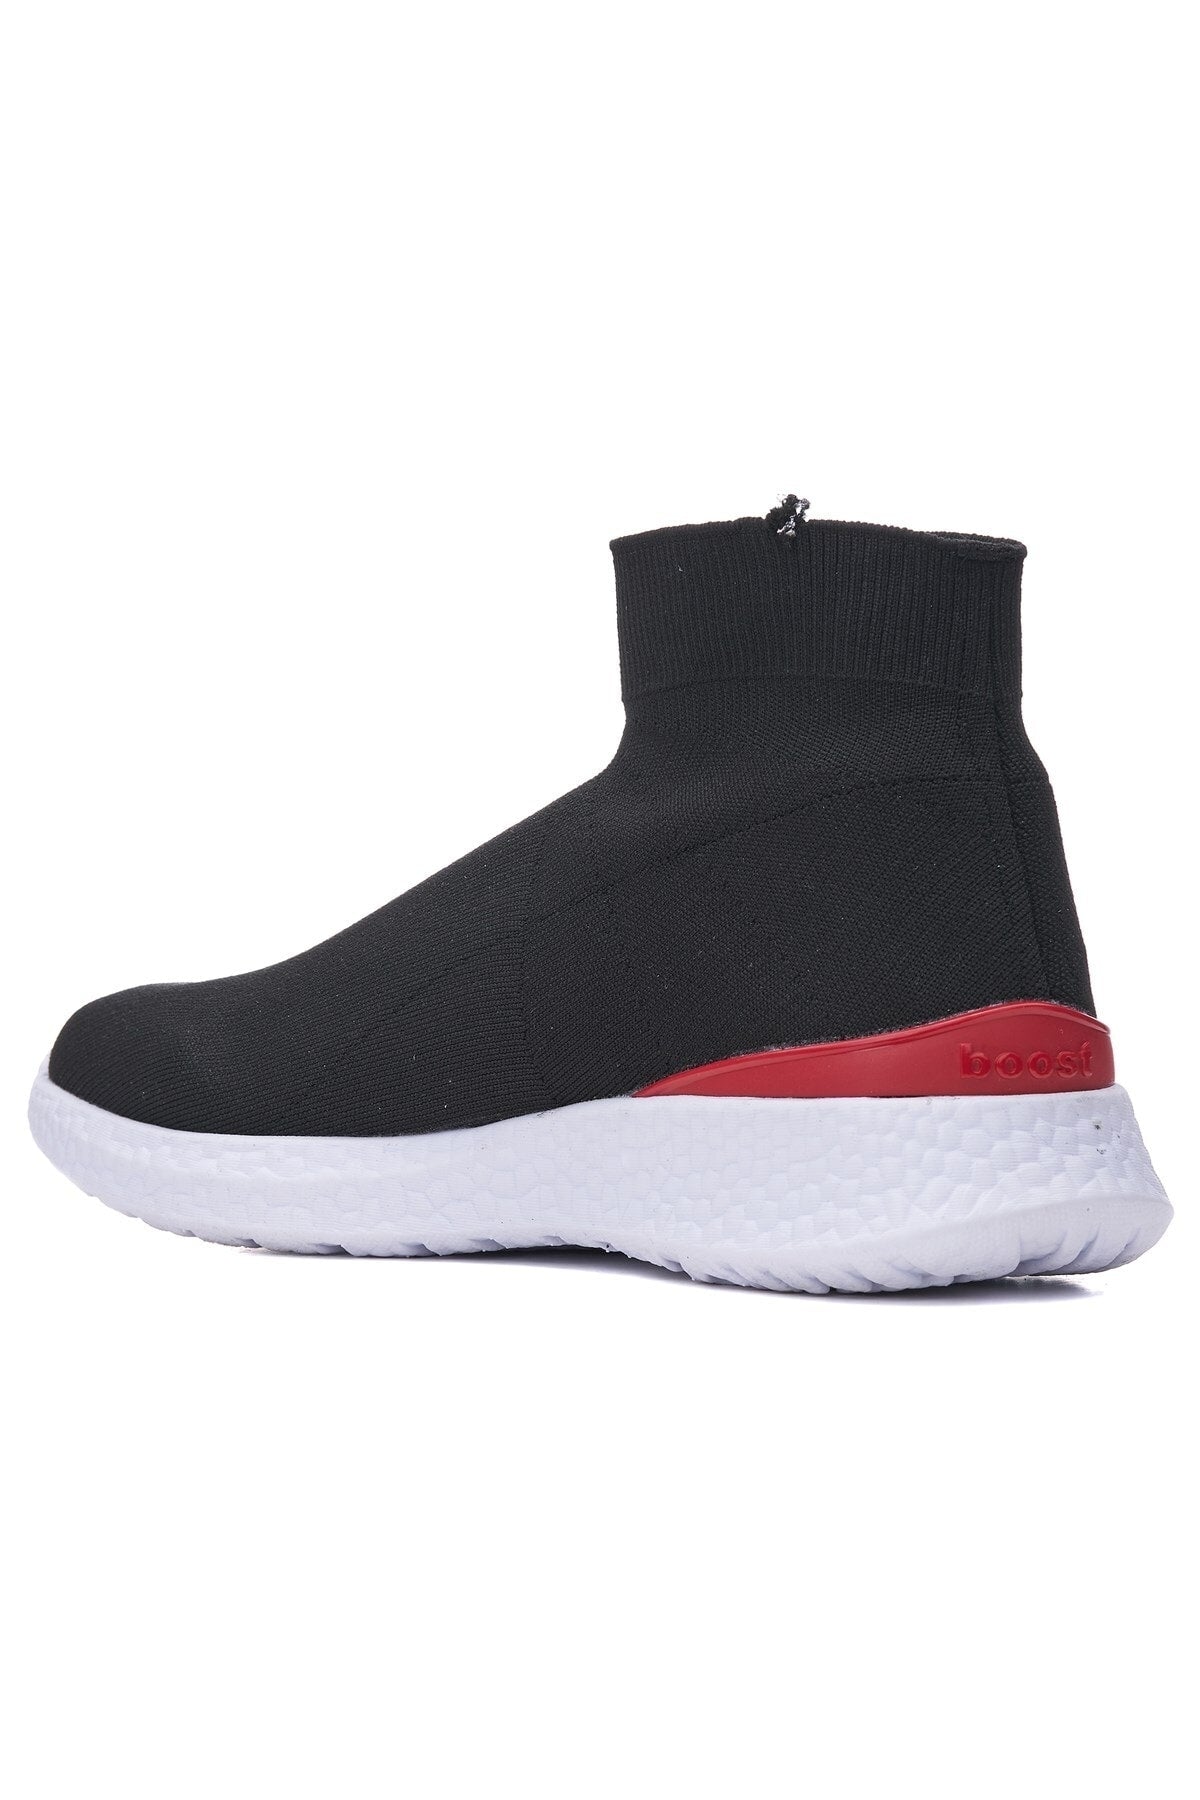 Daily Men's Black Red Sneaker Stretch Socks Formal Flexible Laceless Knitwear Sport Shoes 177m